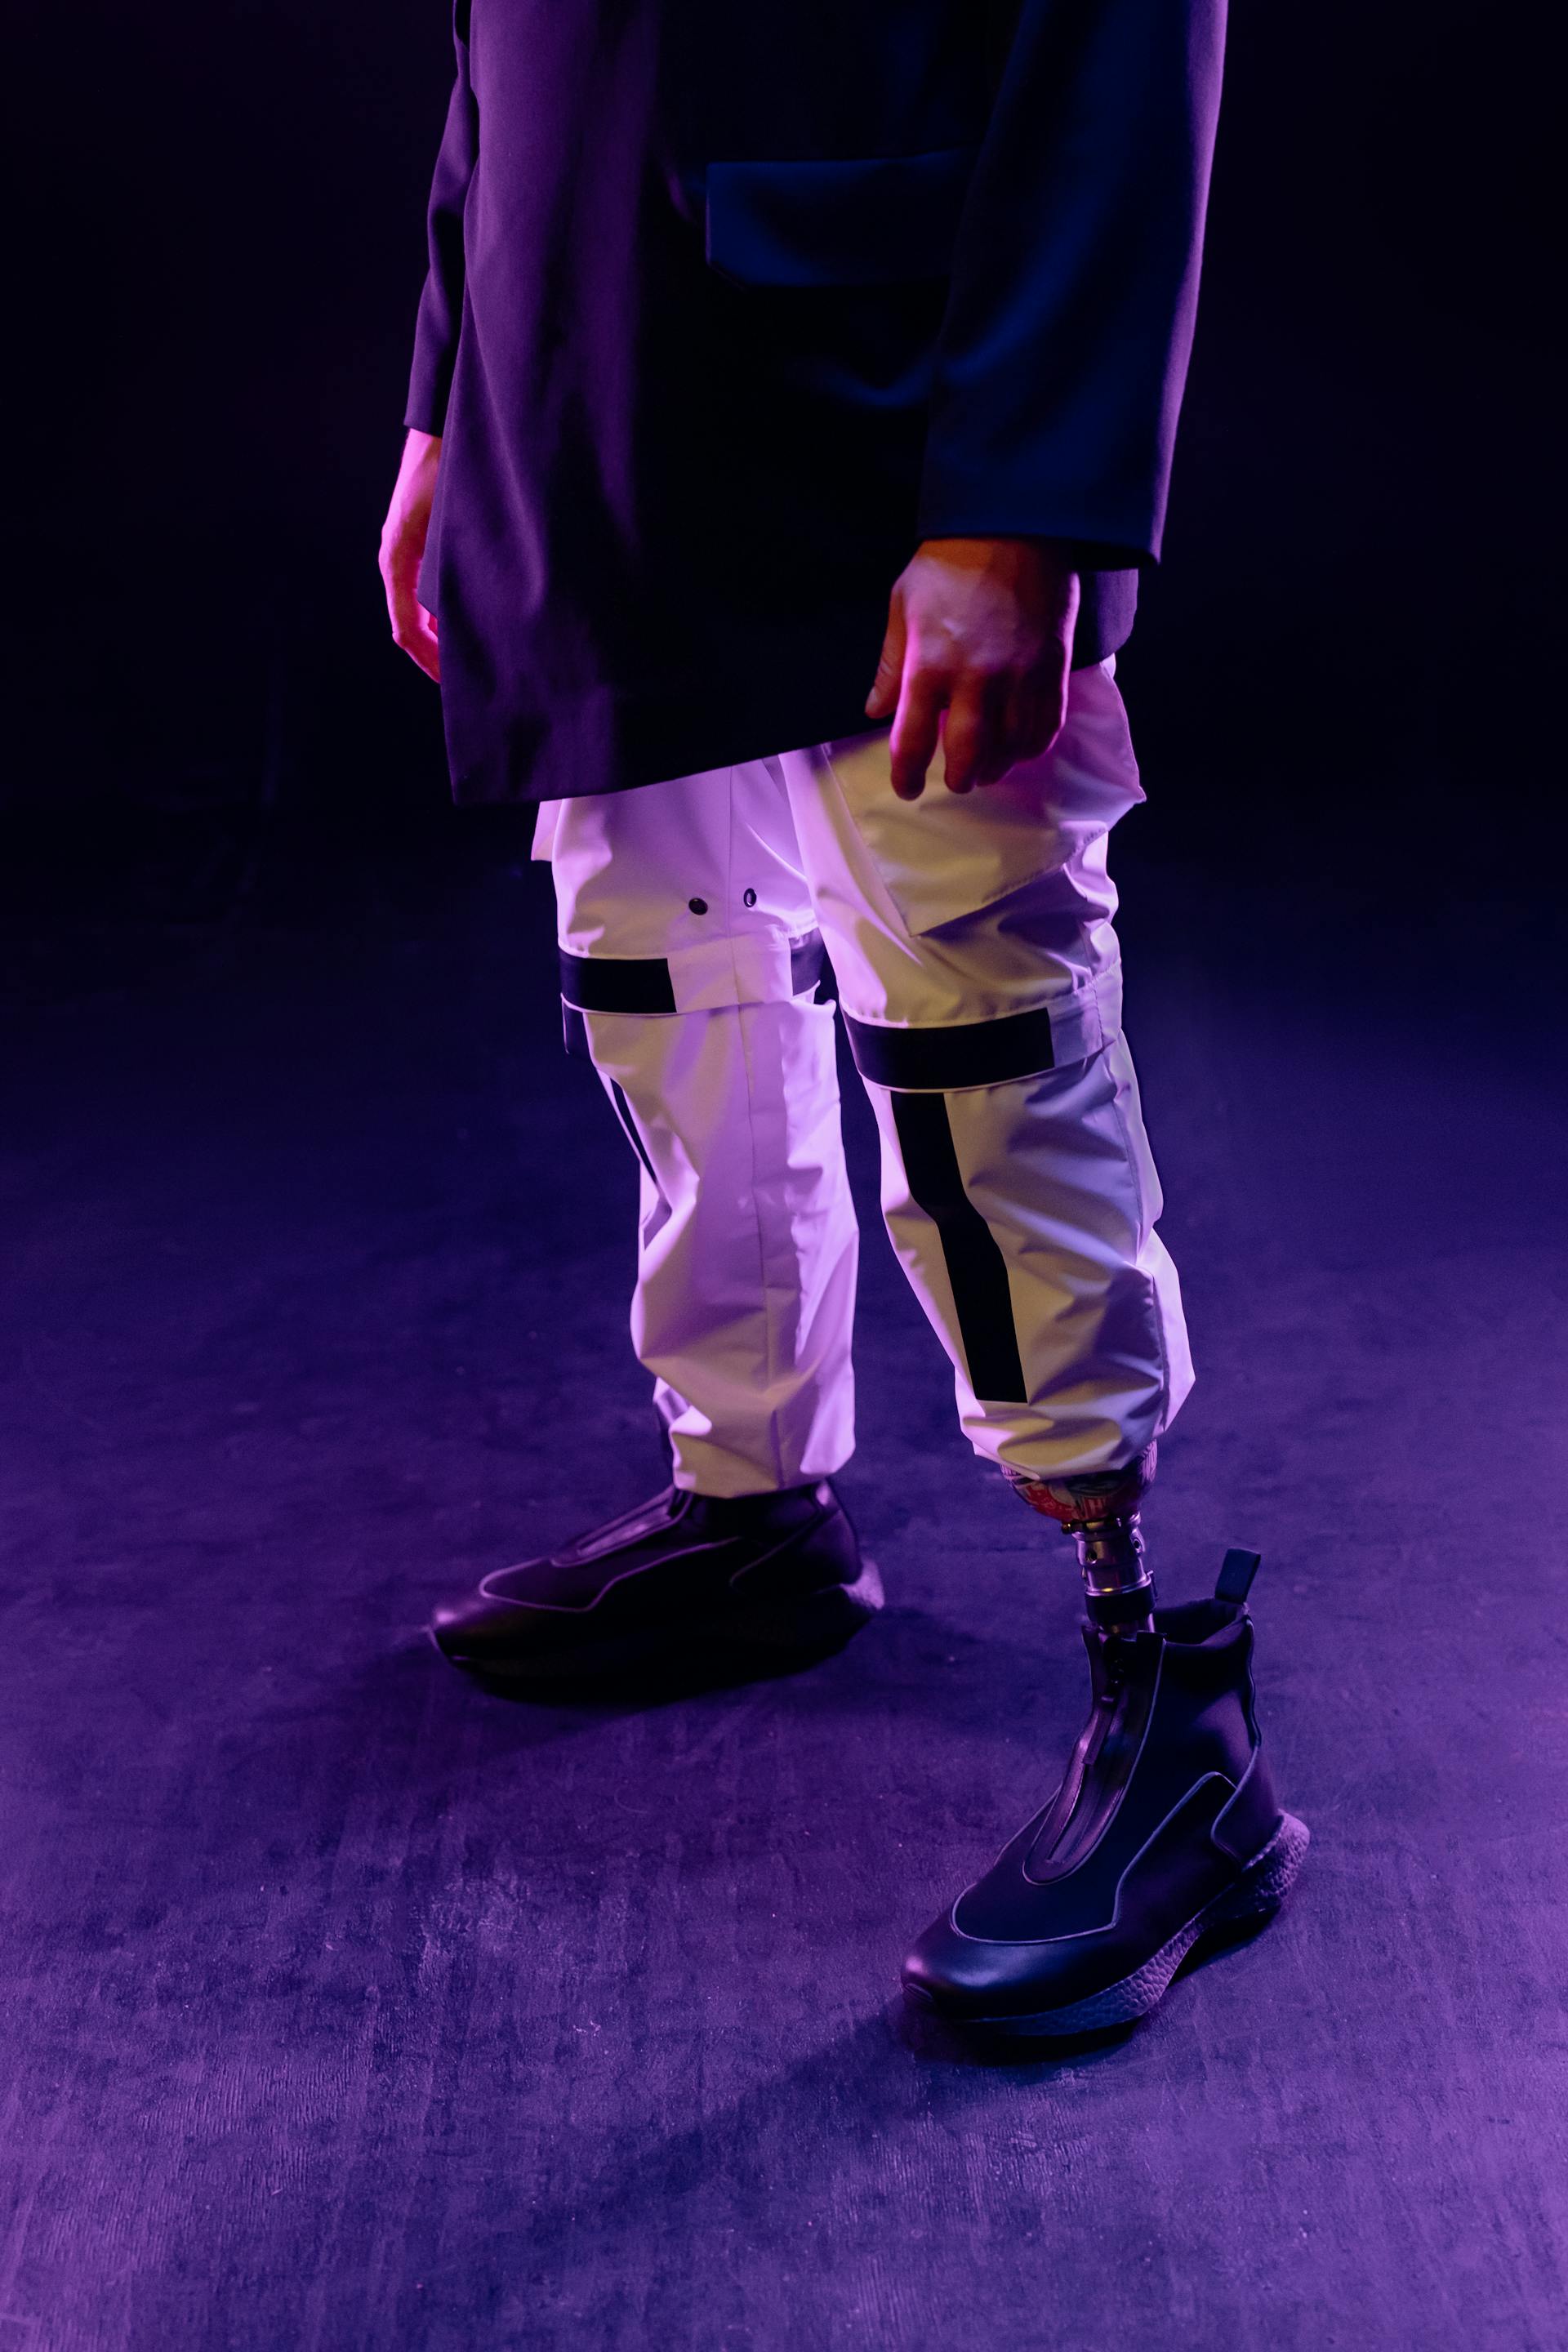 Ein Mann mit einer Beinprothese in einer weißen Hose und schwarzen Schuhen | Quelle: Pexels